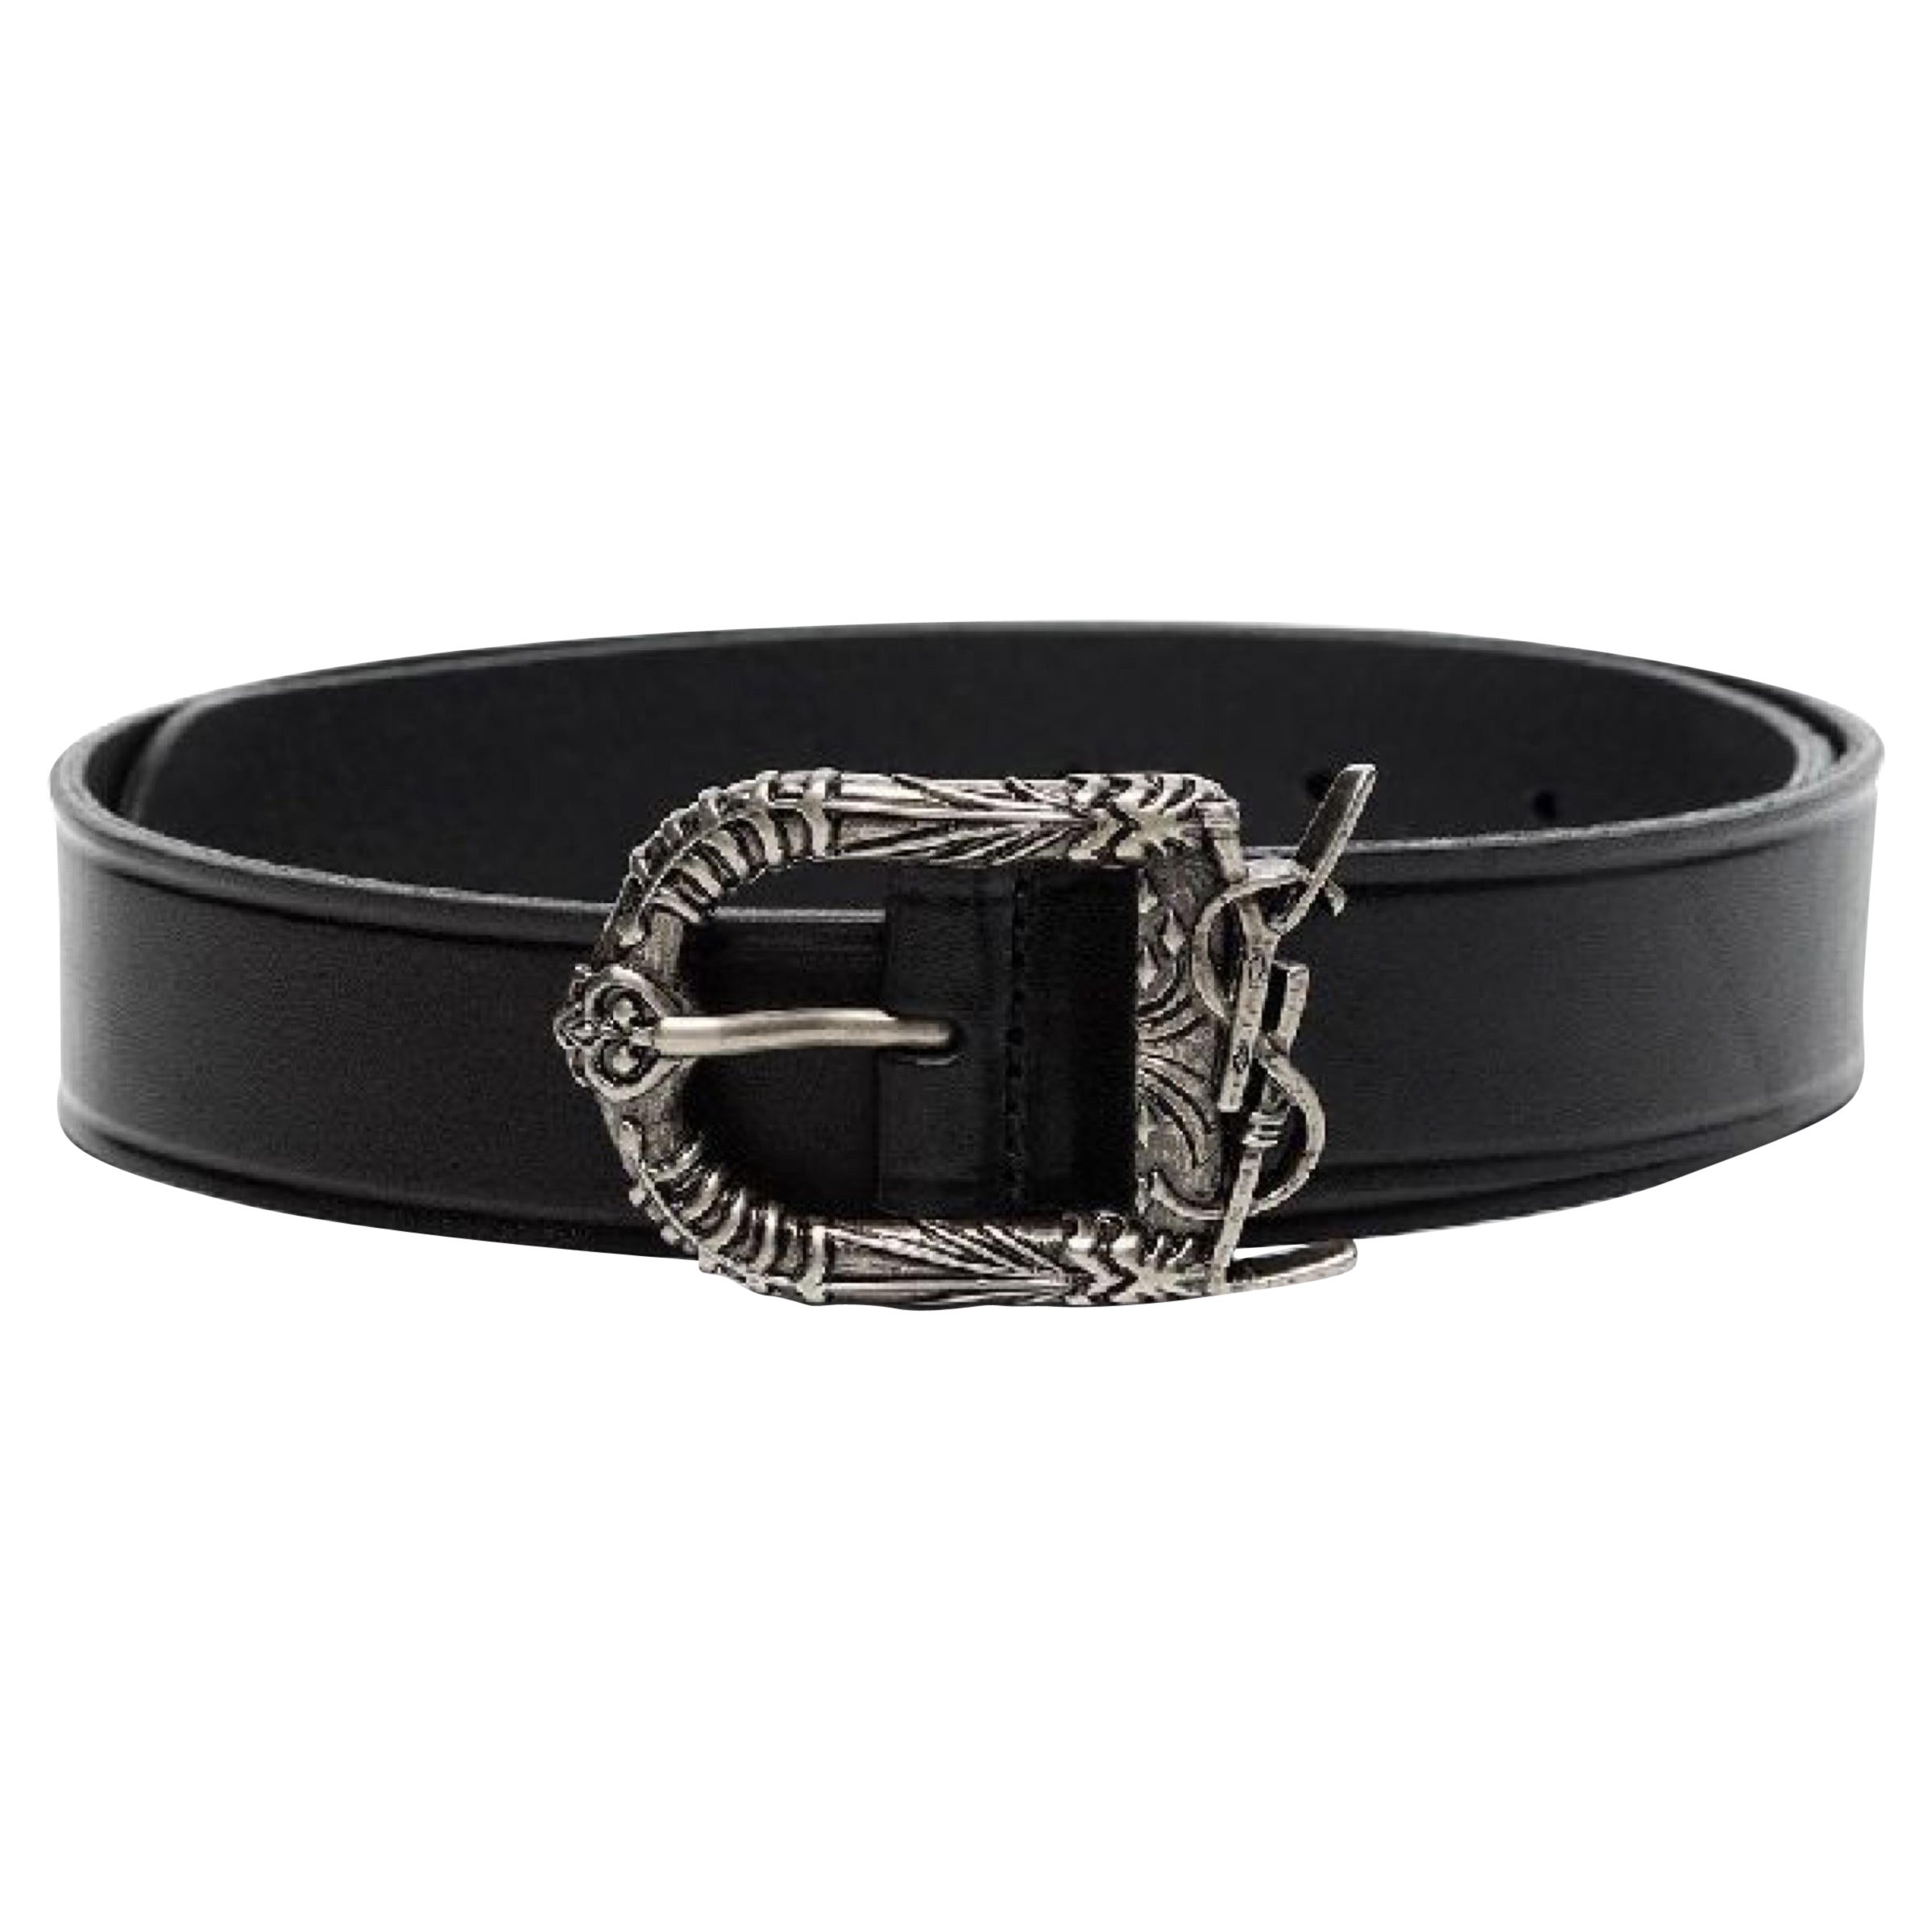 NEW Saint Laurent Black Decorative Buckle Leather Belt Size 34 US 85 EU For Sale